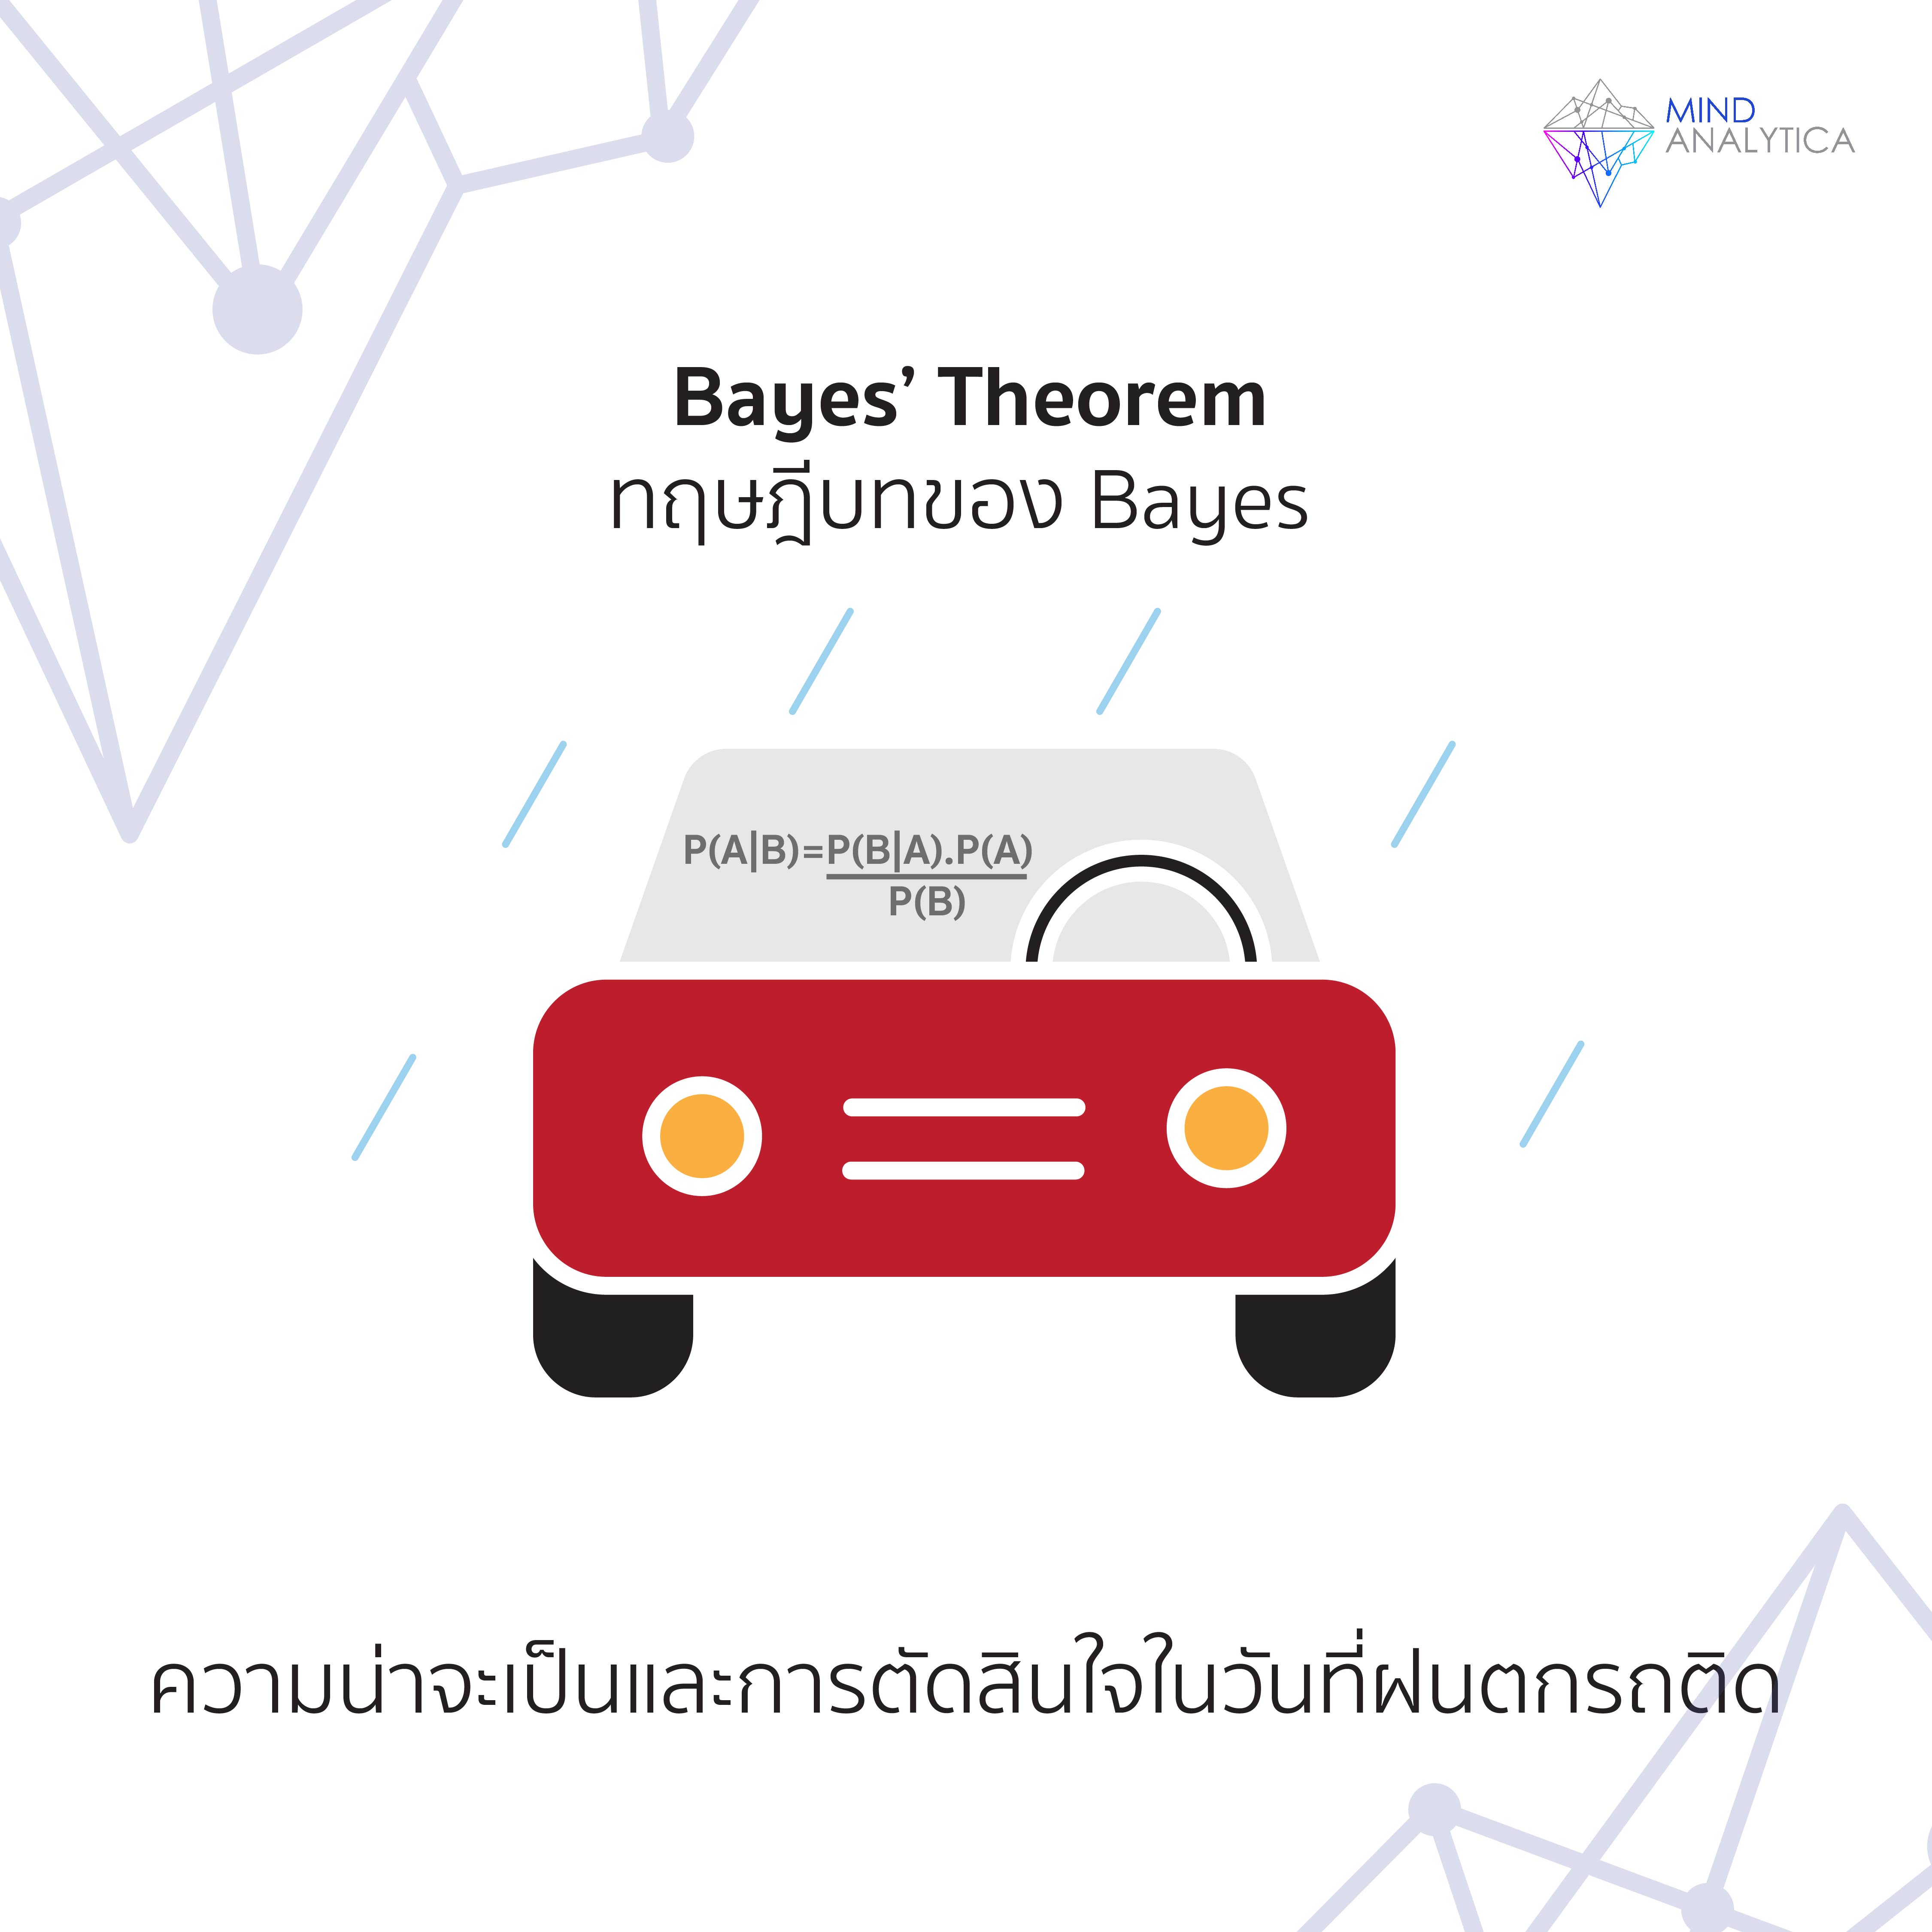 ทฤษฎีของเบย์ (Bayes’ theorem) กับการตัดสินใจ